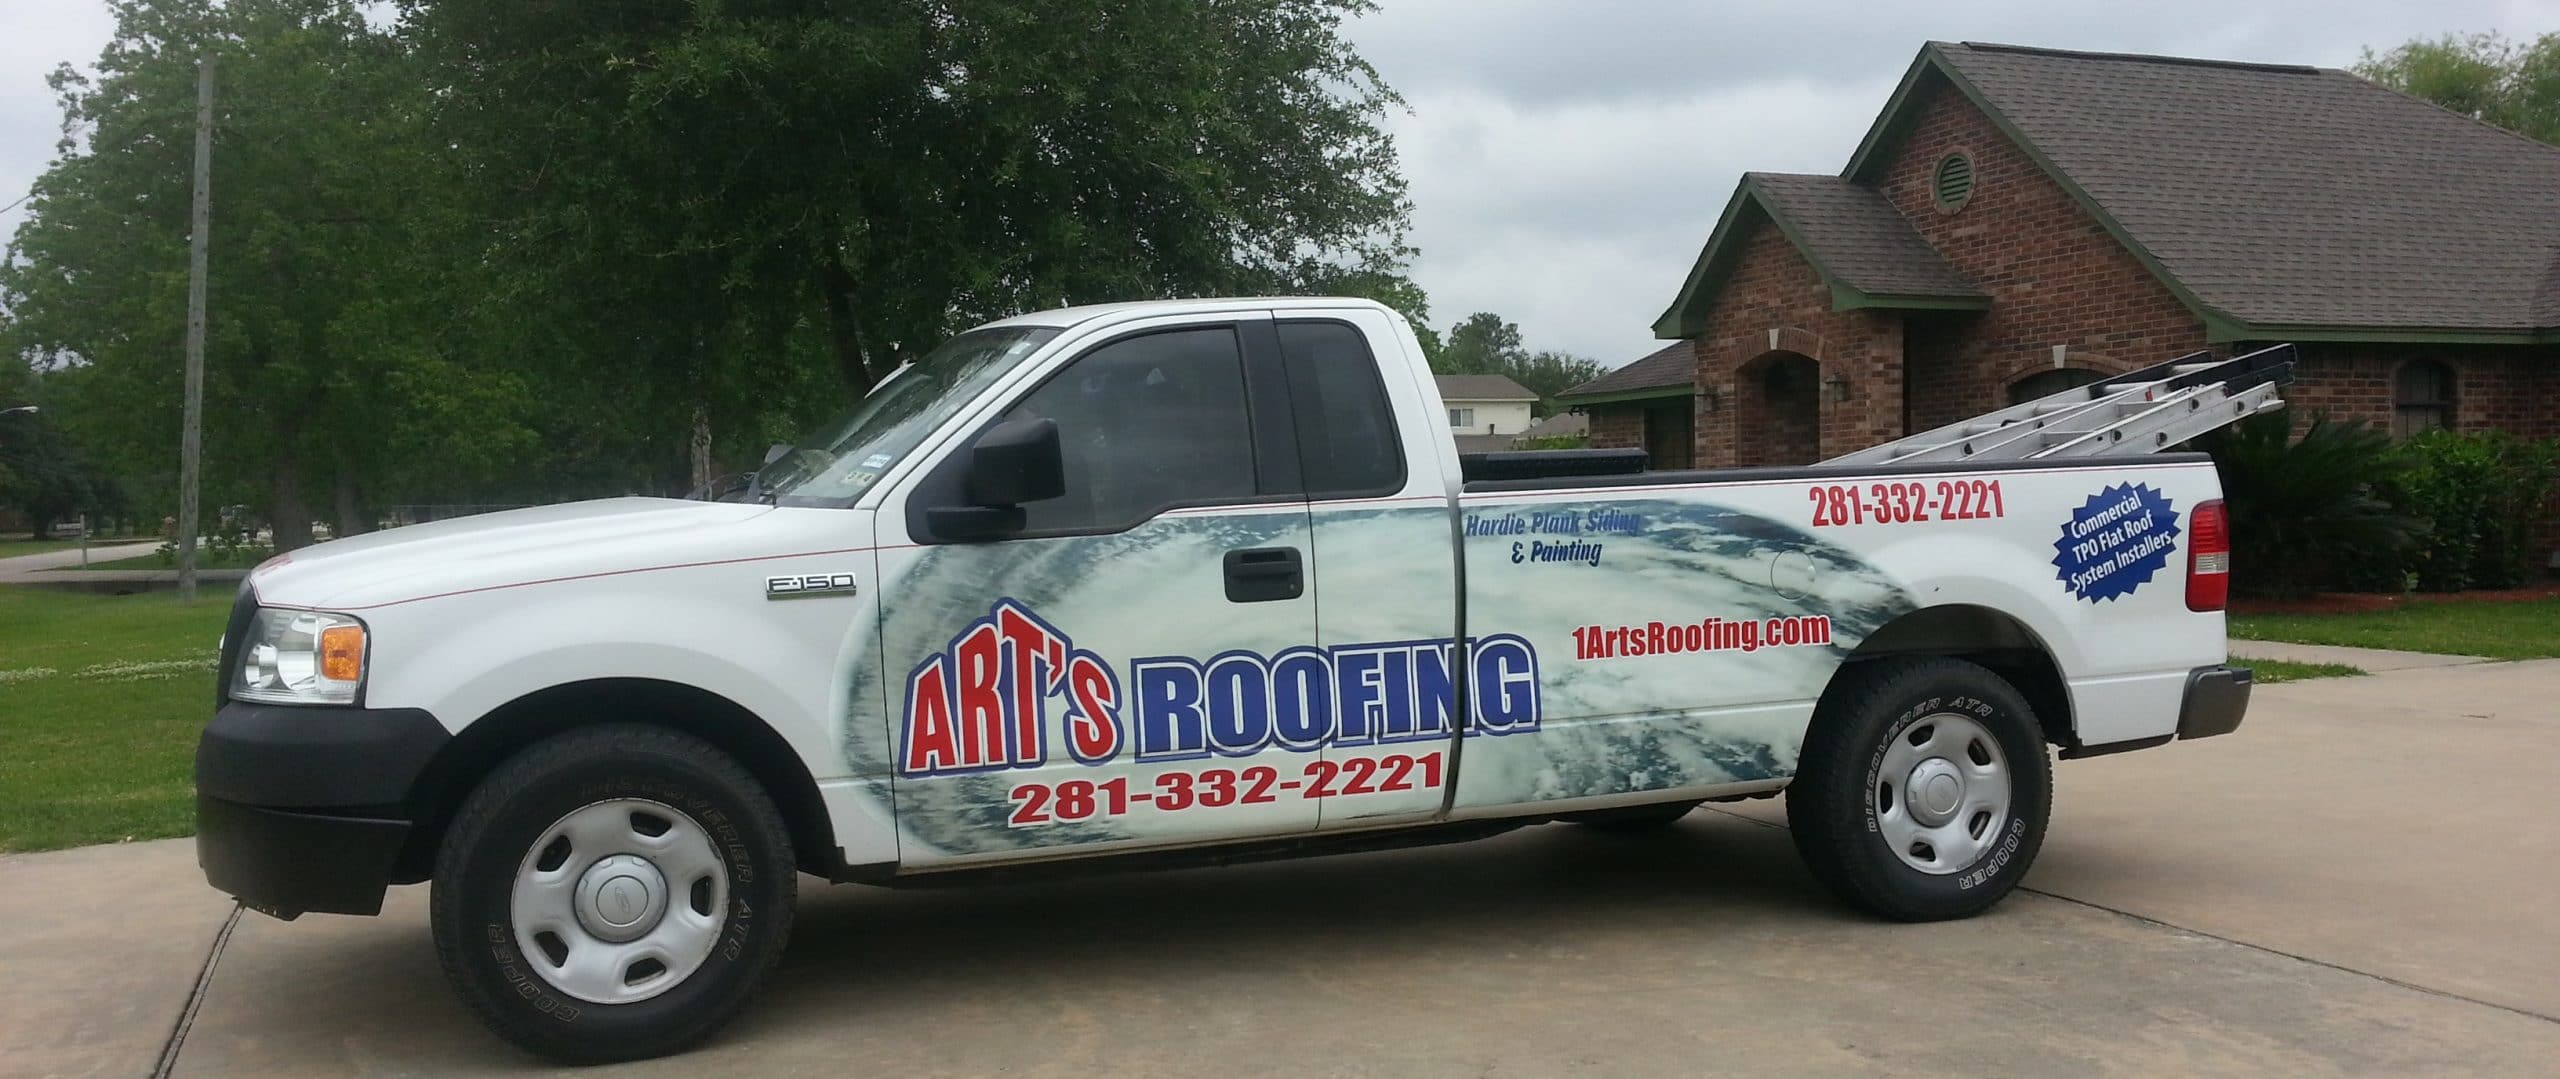 Art's roofing truck